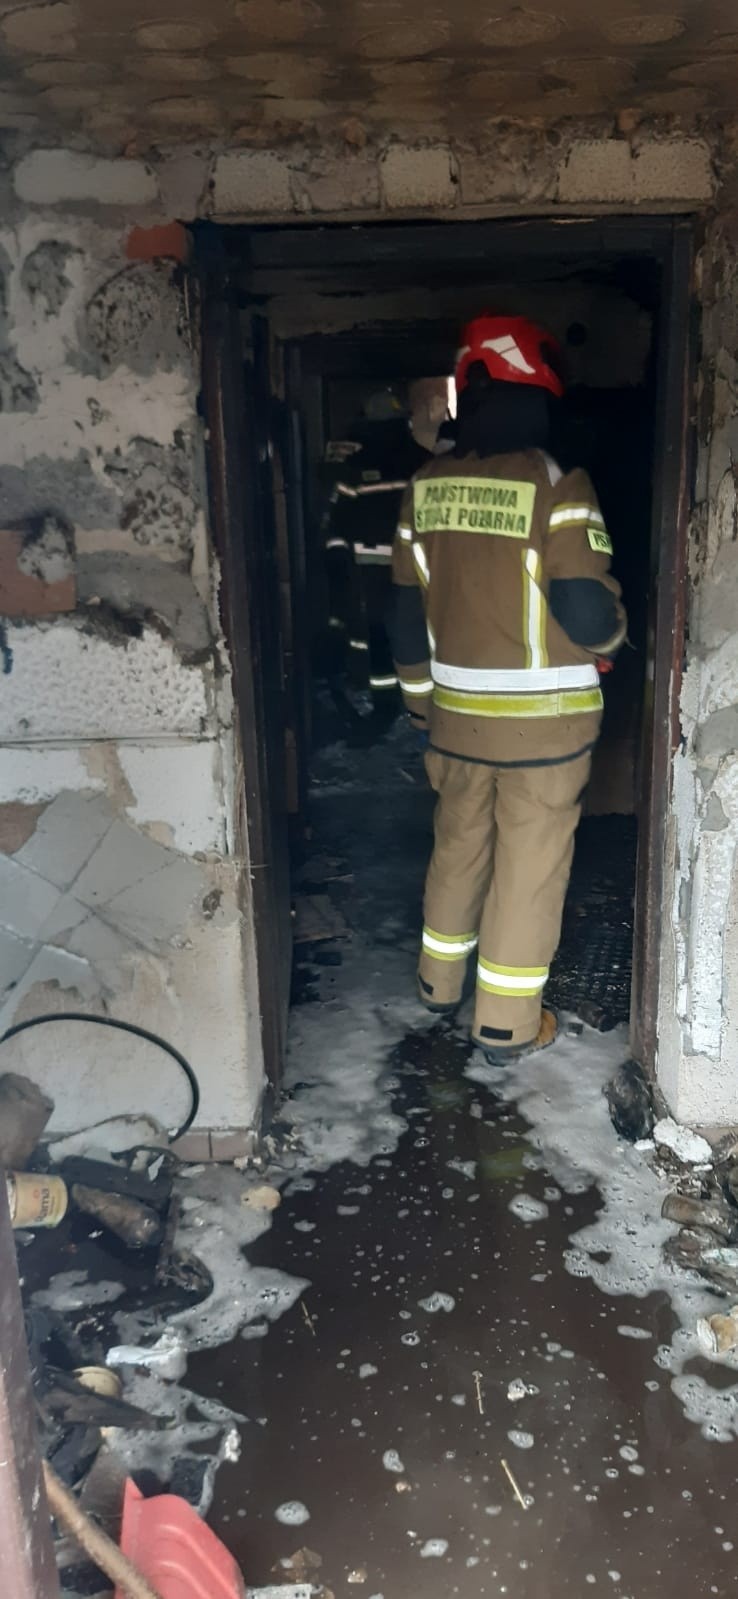 Tragiczny pożar nad Jeziorem Czchowskim. Nie żyje 74-letnia mieszkanka Tropia